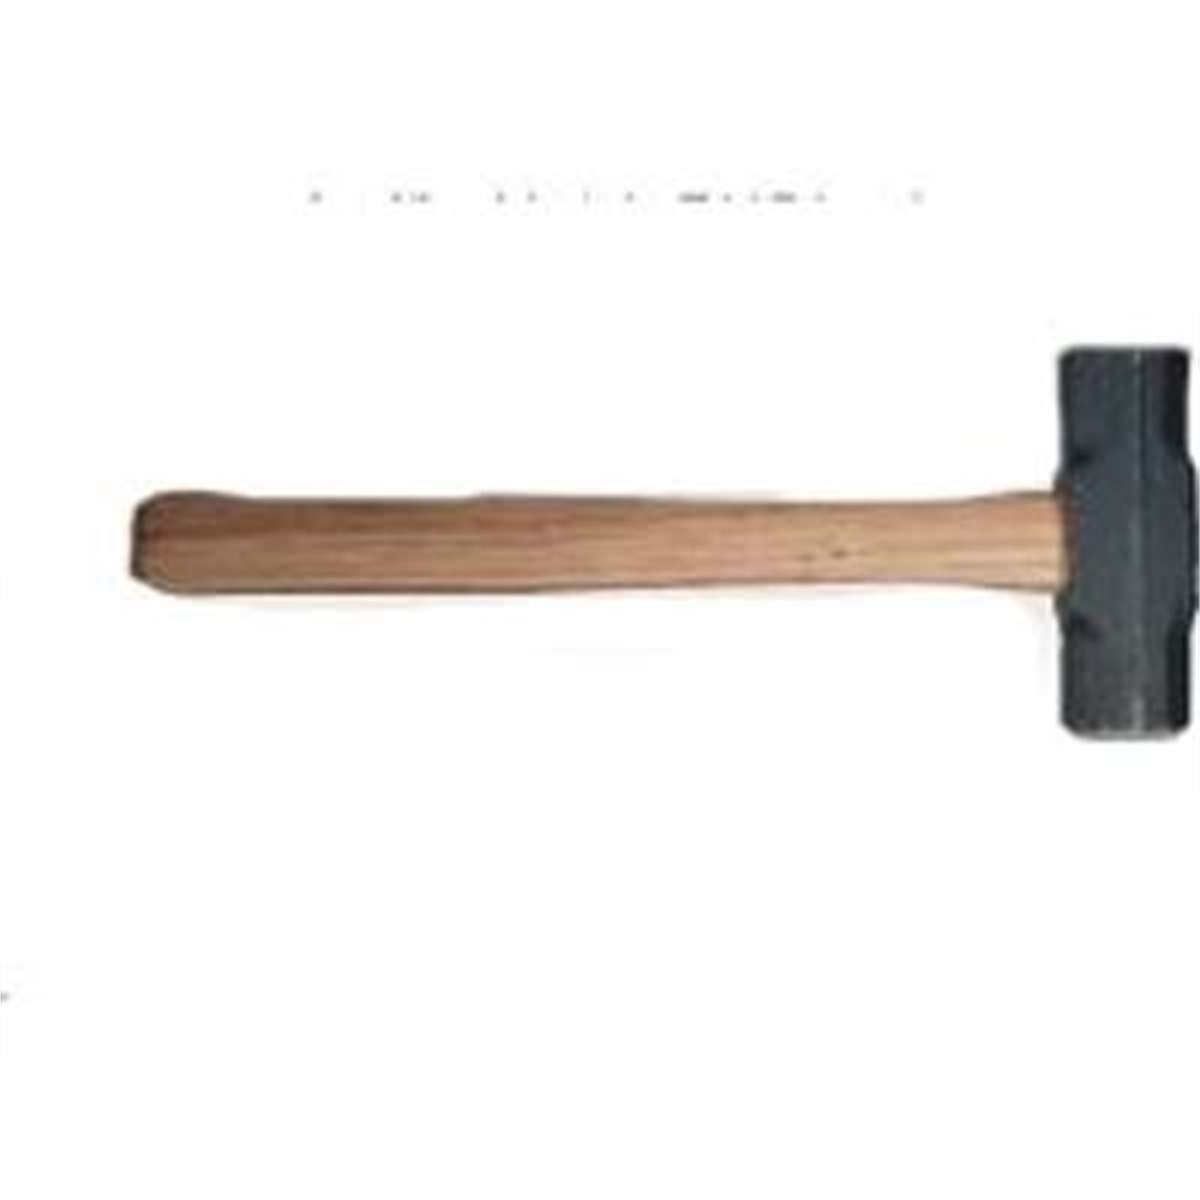 Double-Face Sledge Hammer 84H-2 - 2 Lb